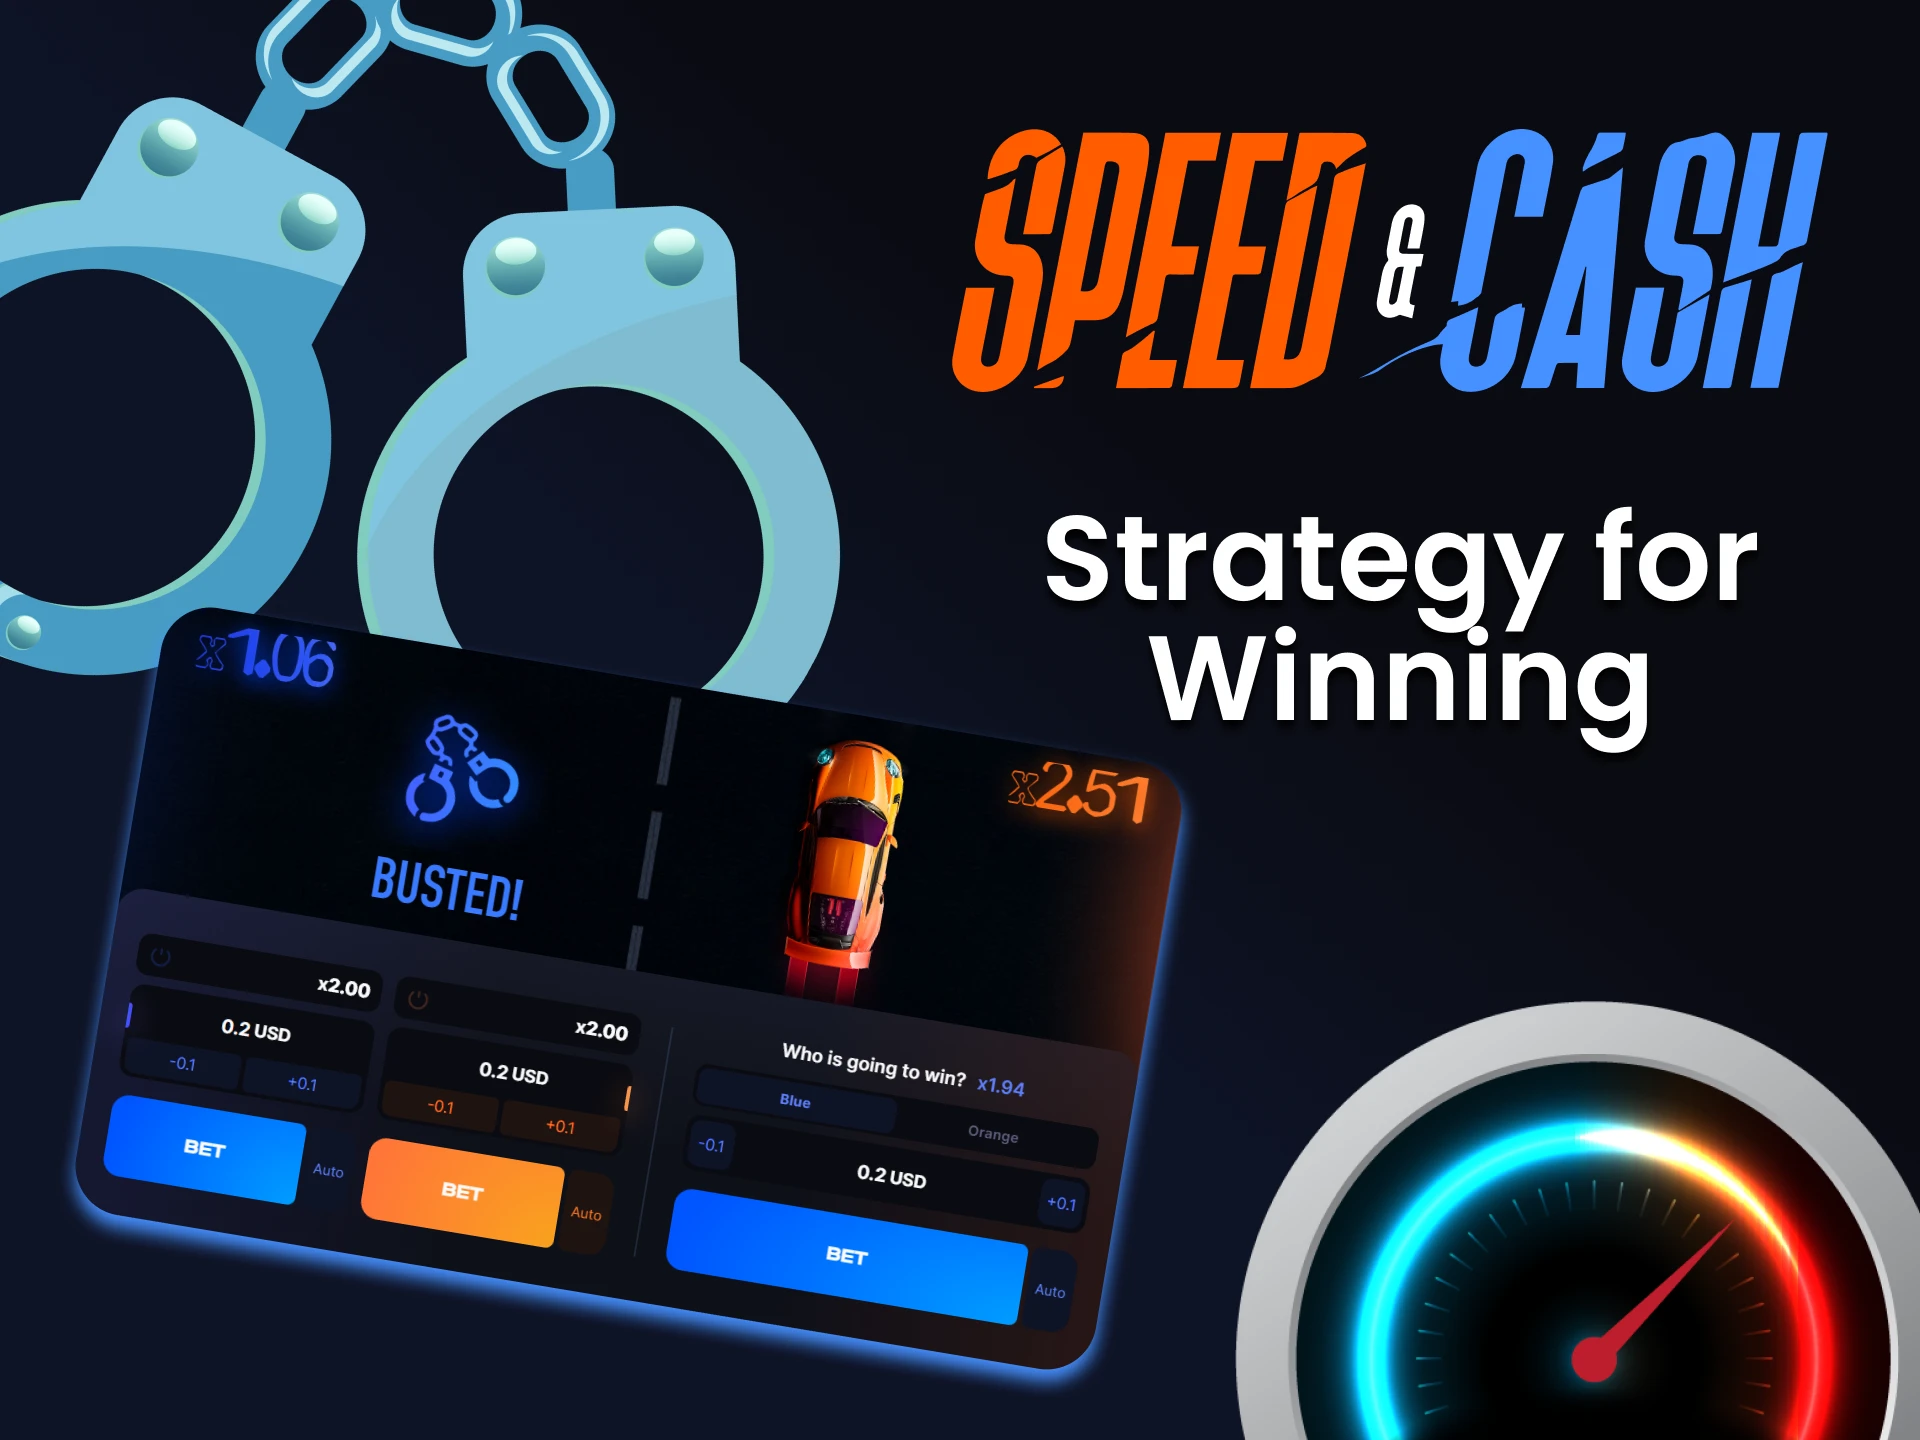 стратегия Speed n Cash 1win 